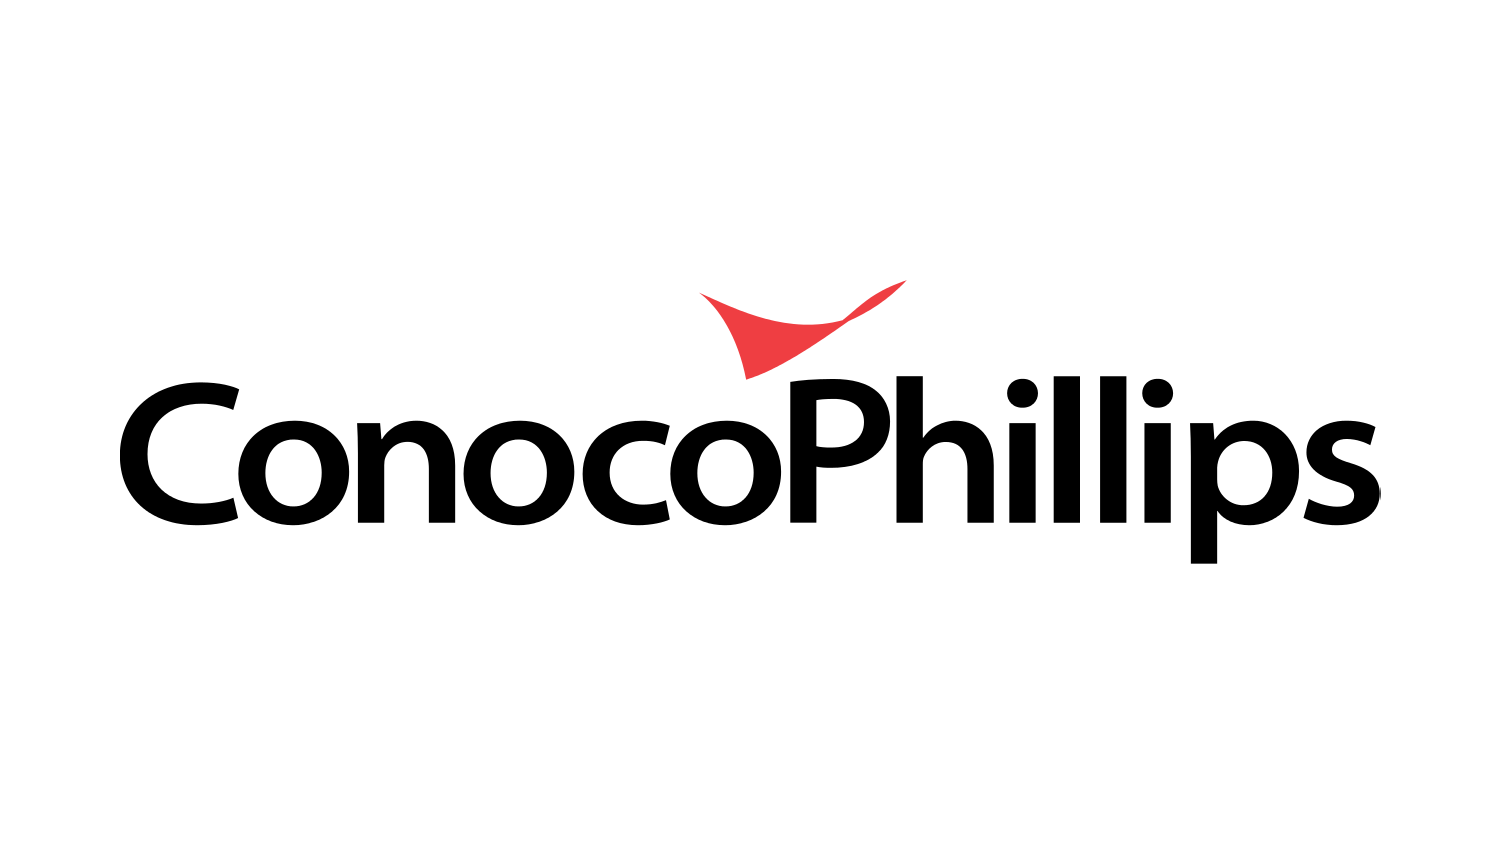 Logo of Conoco Phillips